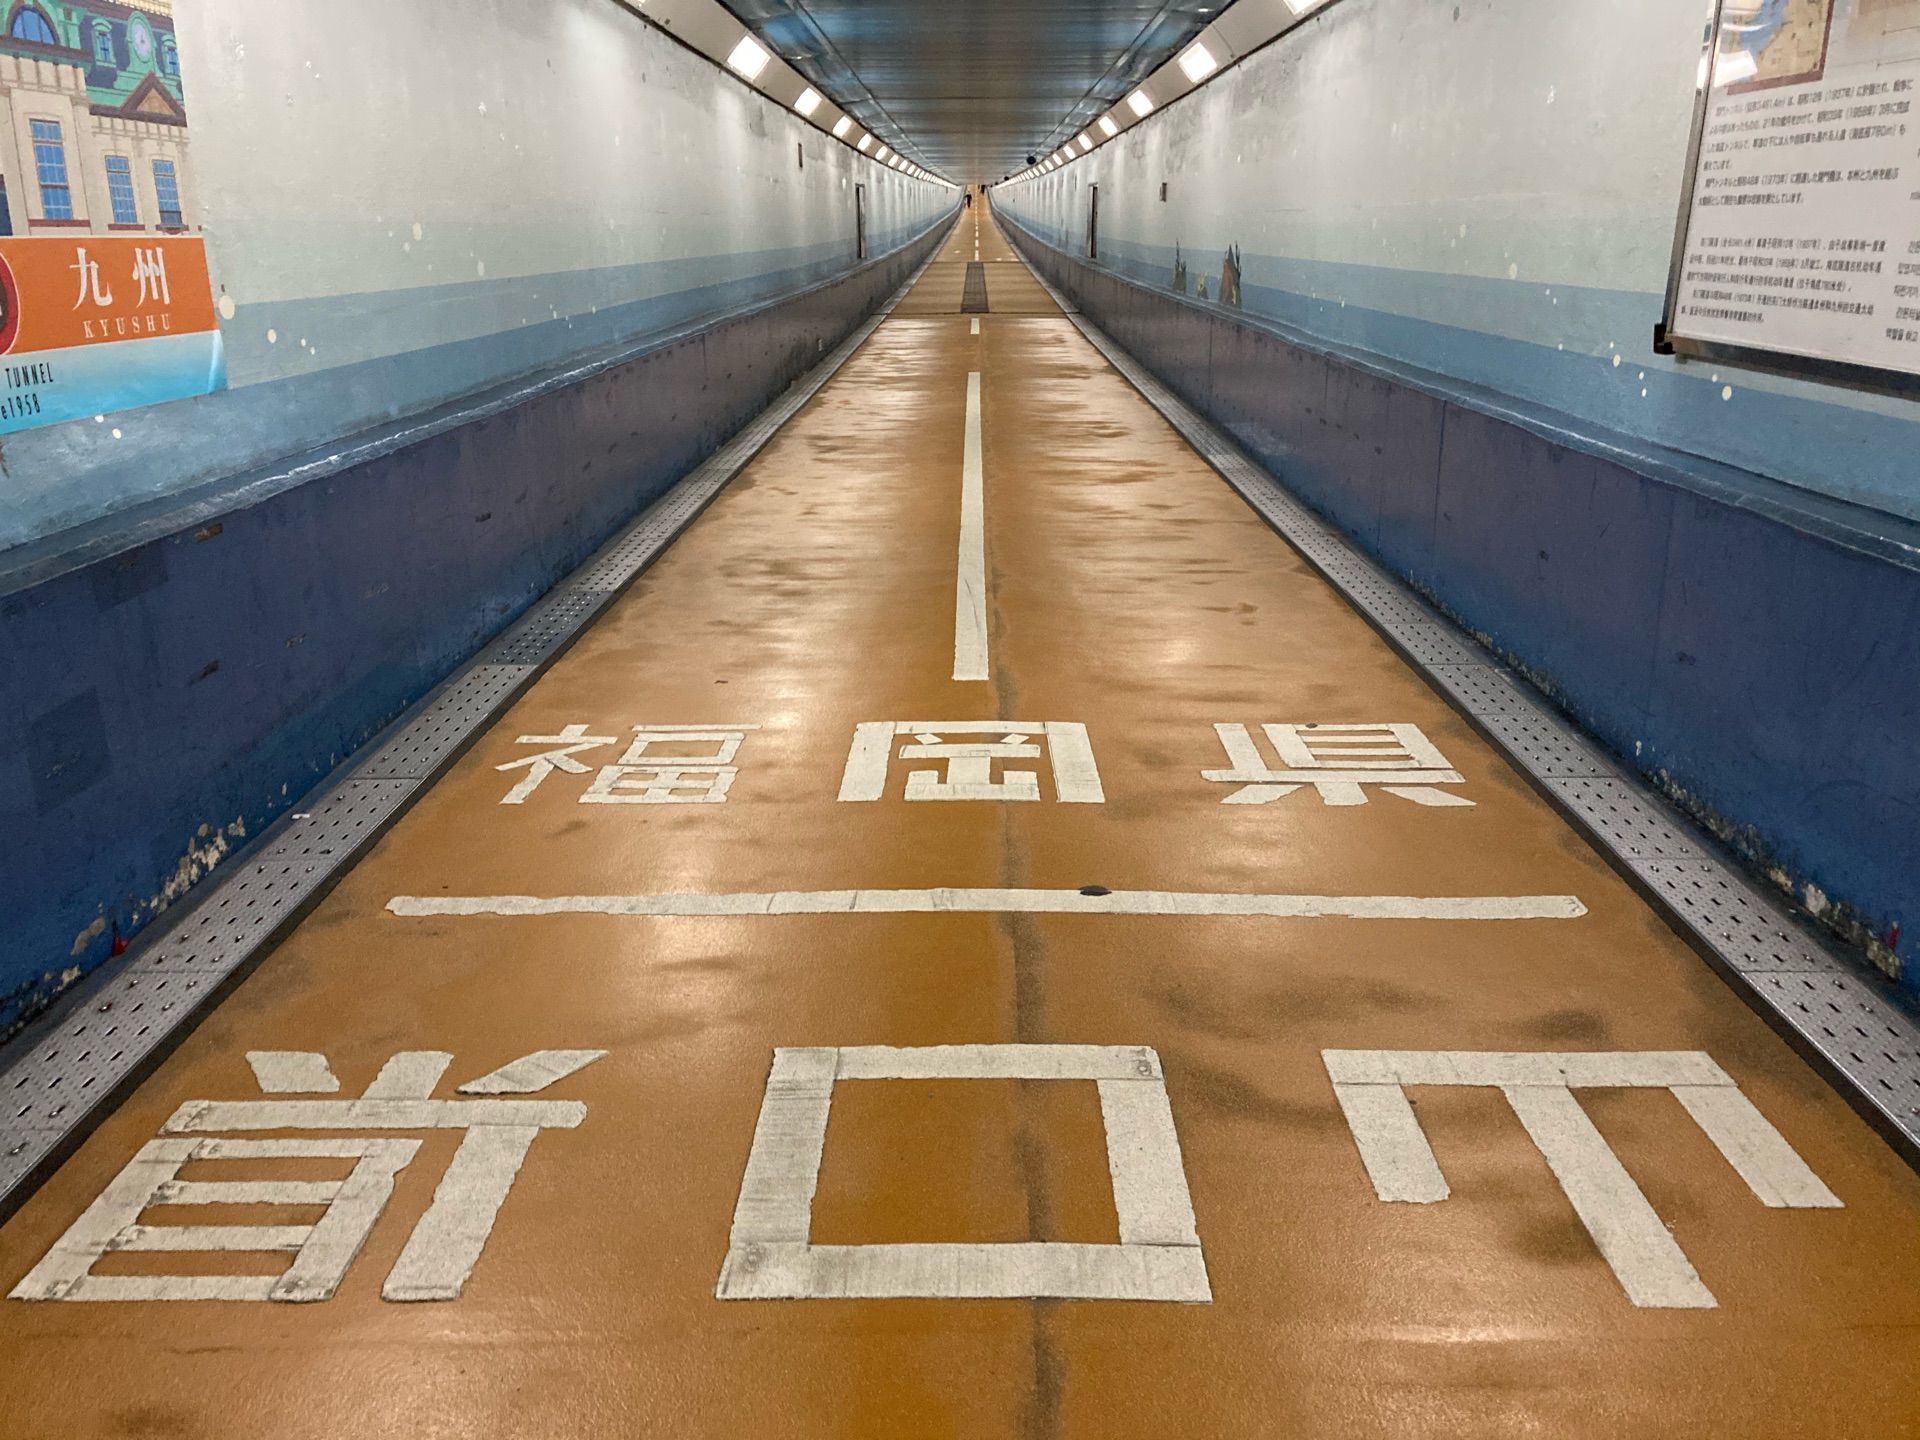 関門トンネル人道入口 下関側 徒歩で渡れる県境 福岡県と山口県を結ぶ海底トンネルを結ぶ遊歩道 Recotrip レコトリップ